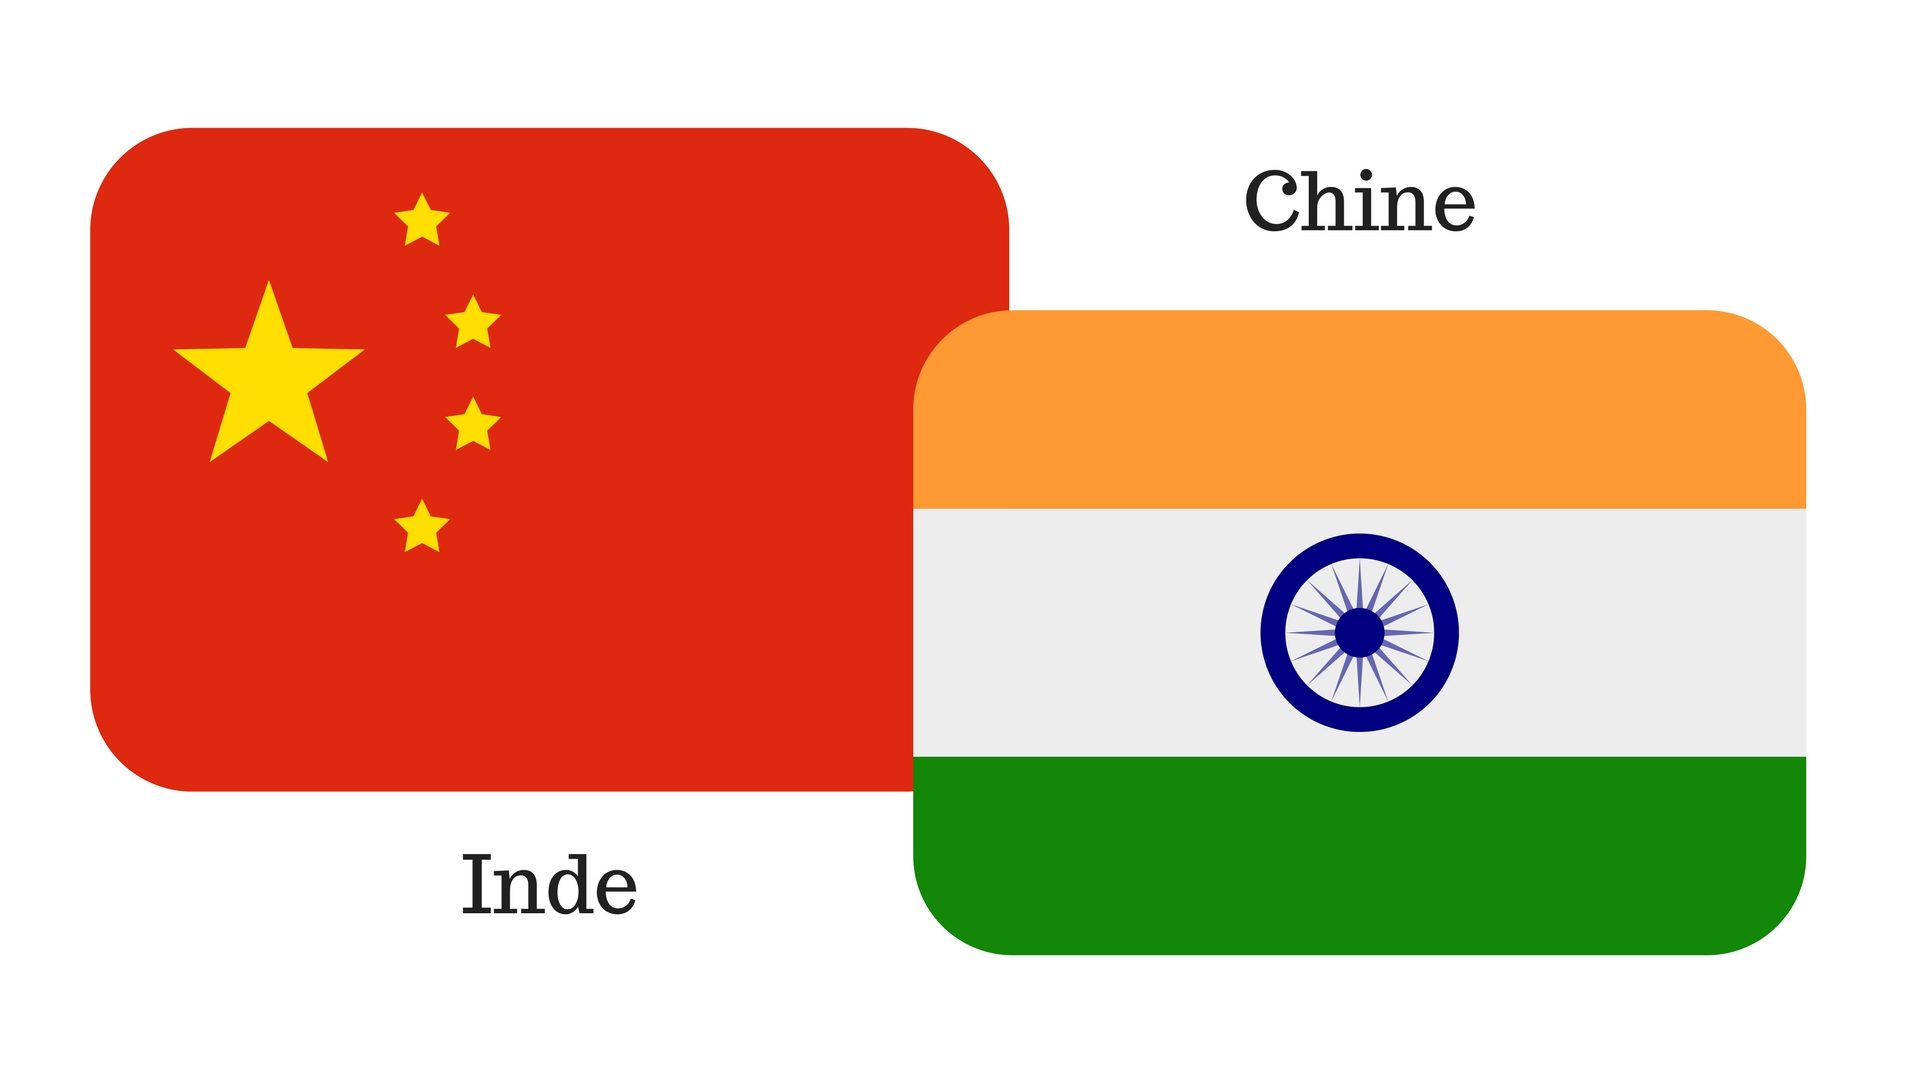 L’Inde adresse une vive protestation à la Chine au sujet d’une carte revendiquant le « territoire de l’Inde ».